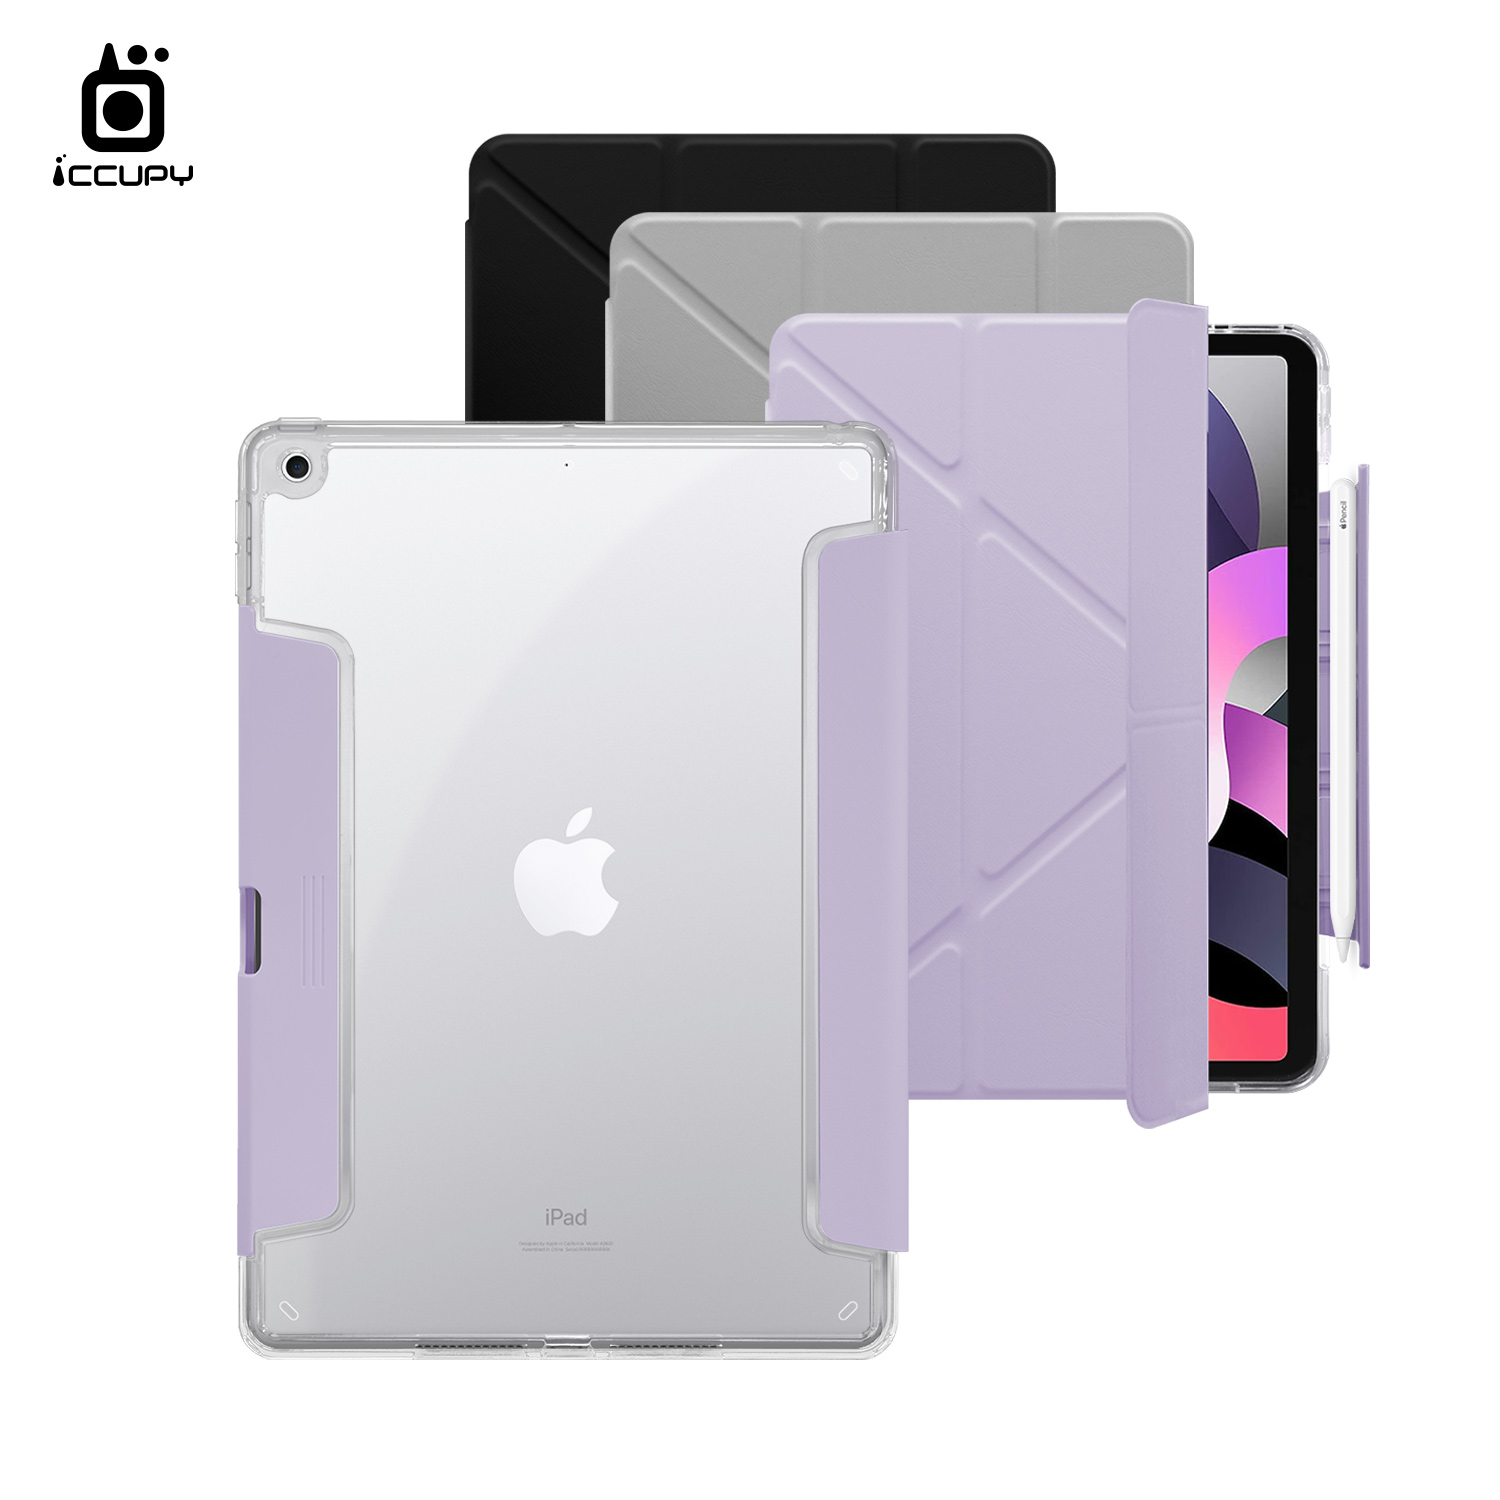 【iCCUPY黑占盾For iPad】黑占盾平板HD系列-隱藏式抽屜筆槽(共三色) For iPad (2020)第8代 10.2吋